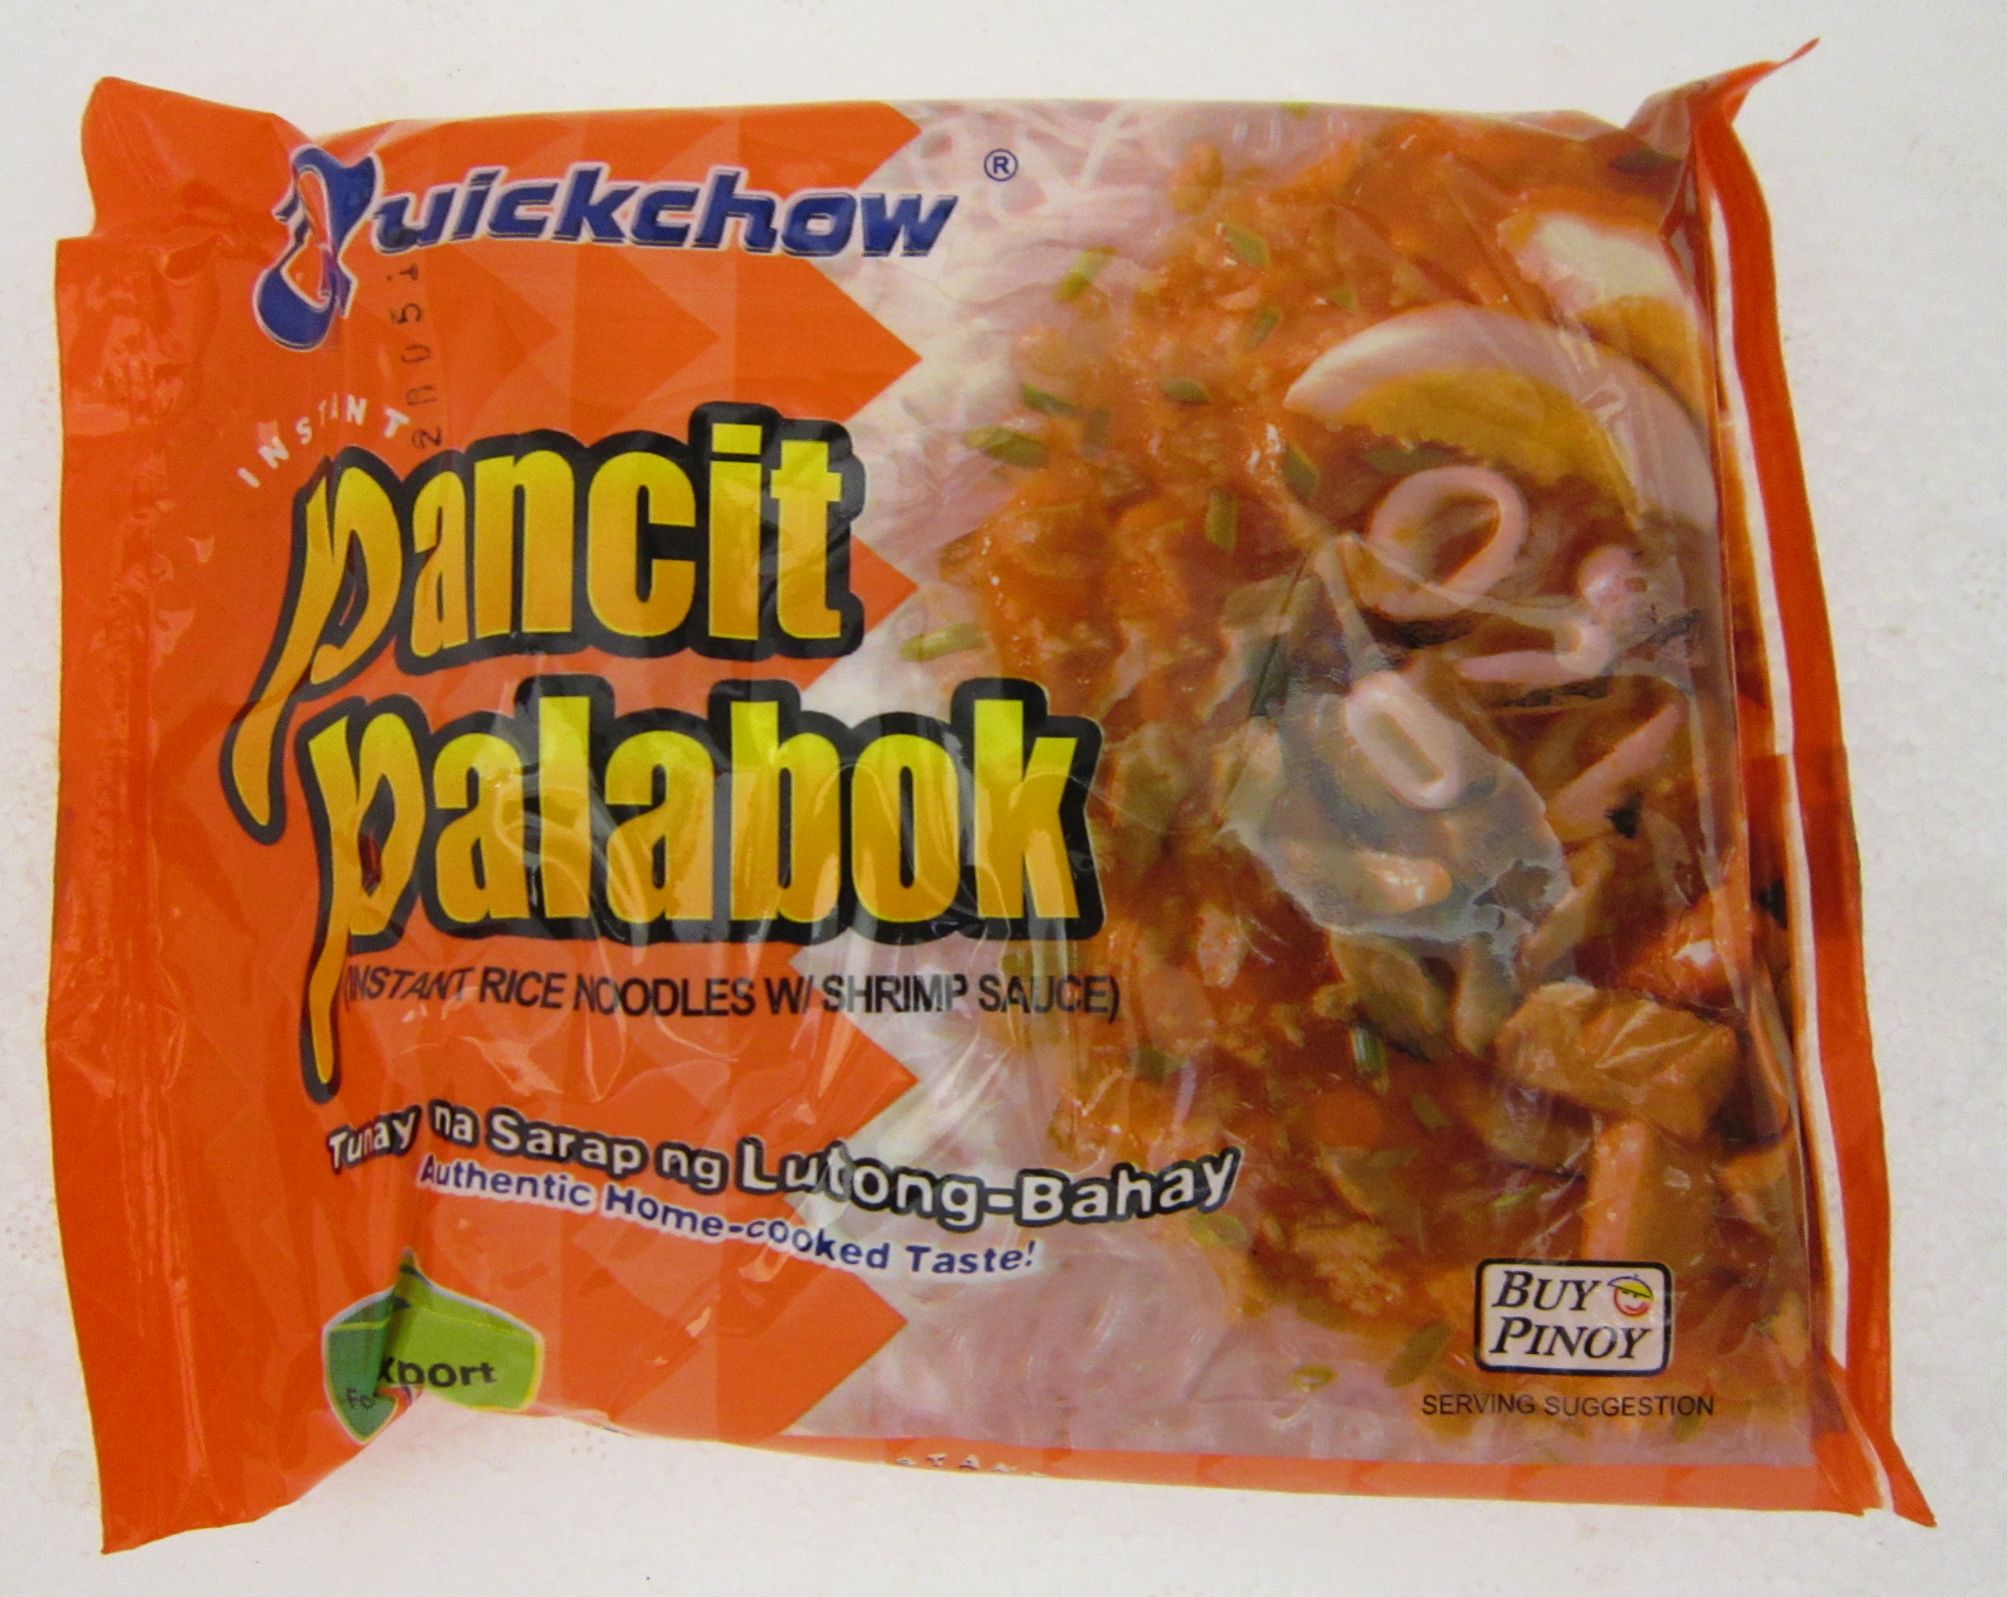 Quickchow Instant Rice Noodles with Shrimp Sauce Image